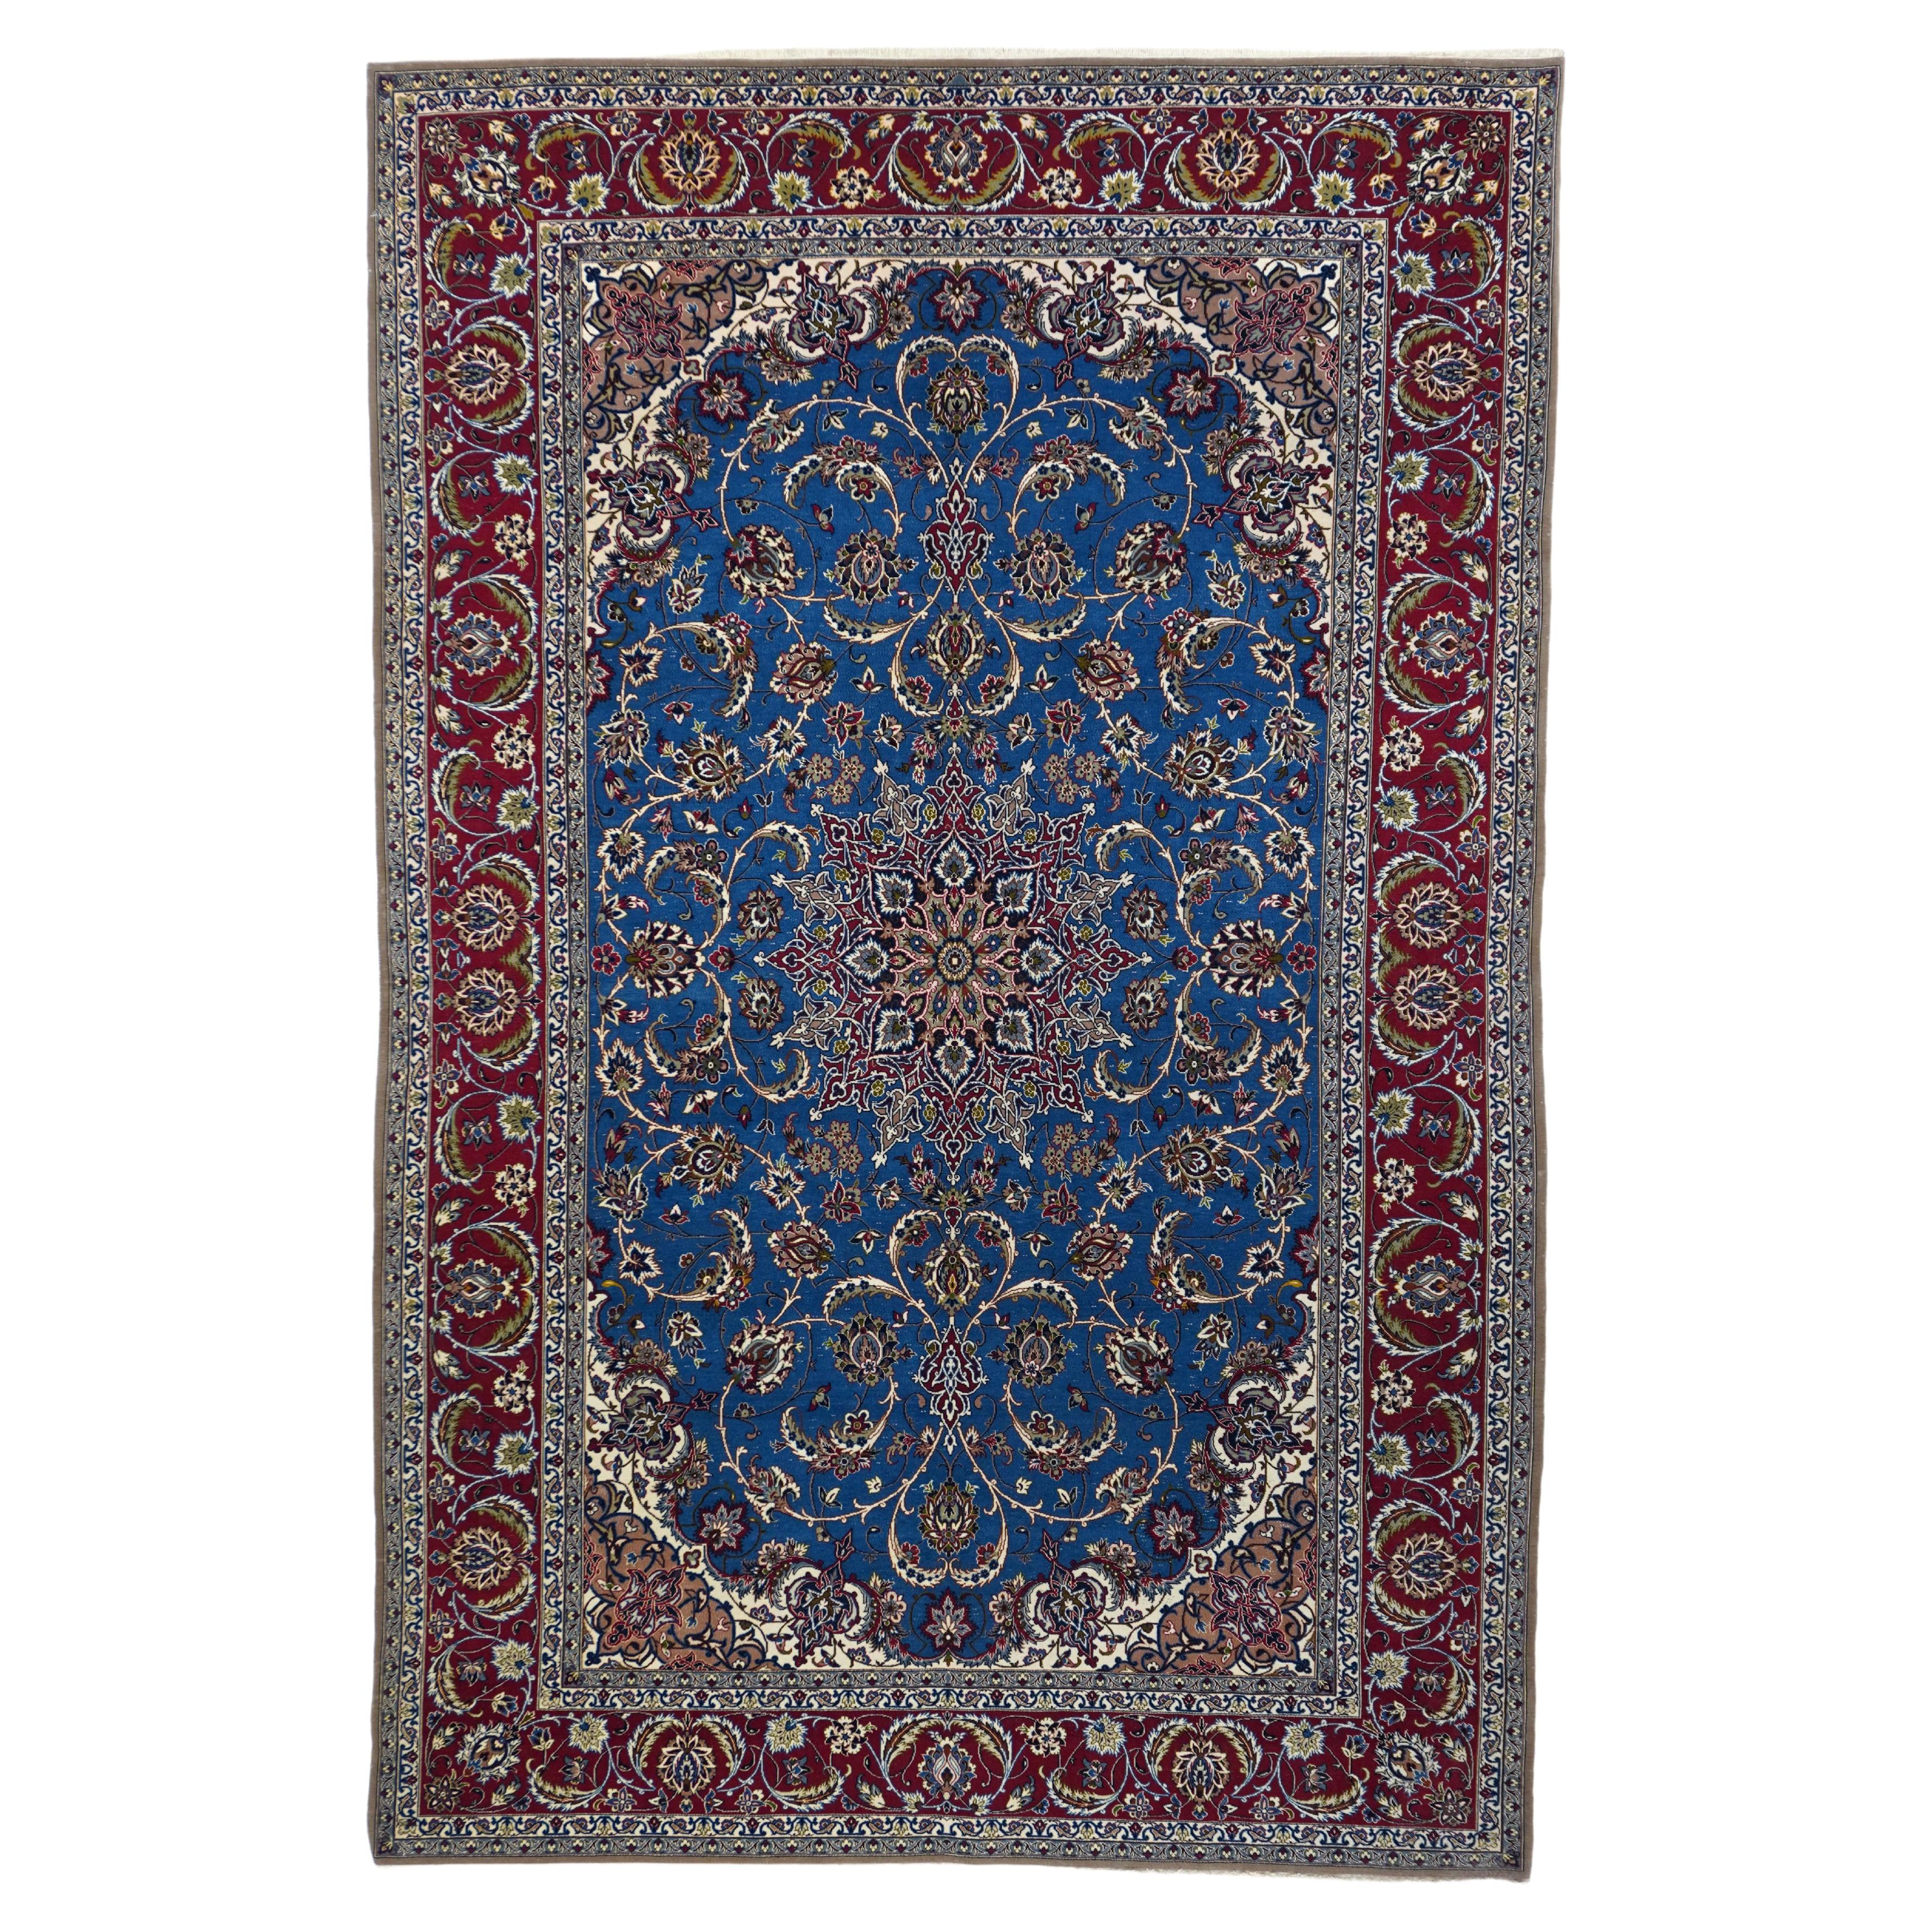 Vintage Isfahan Rug